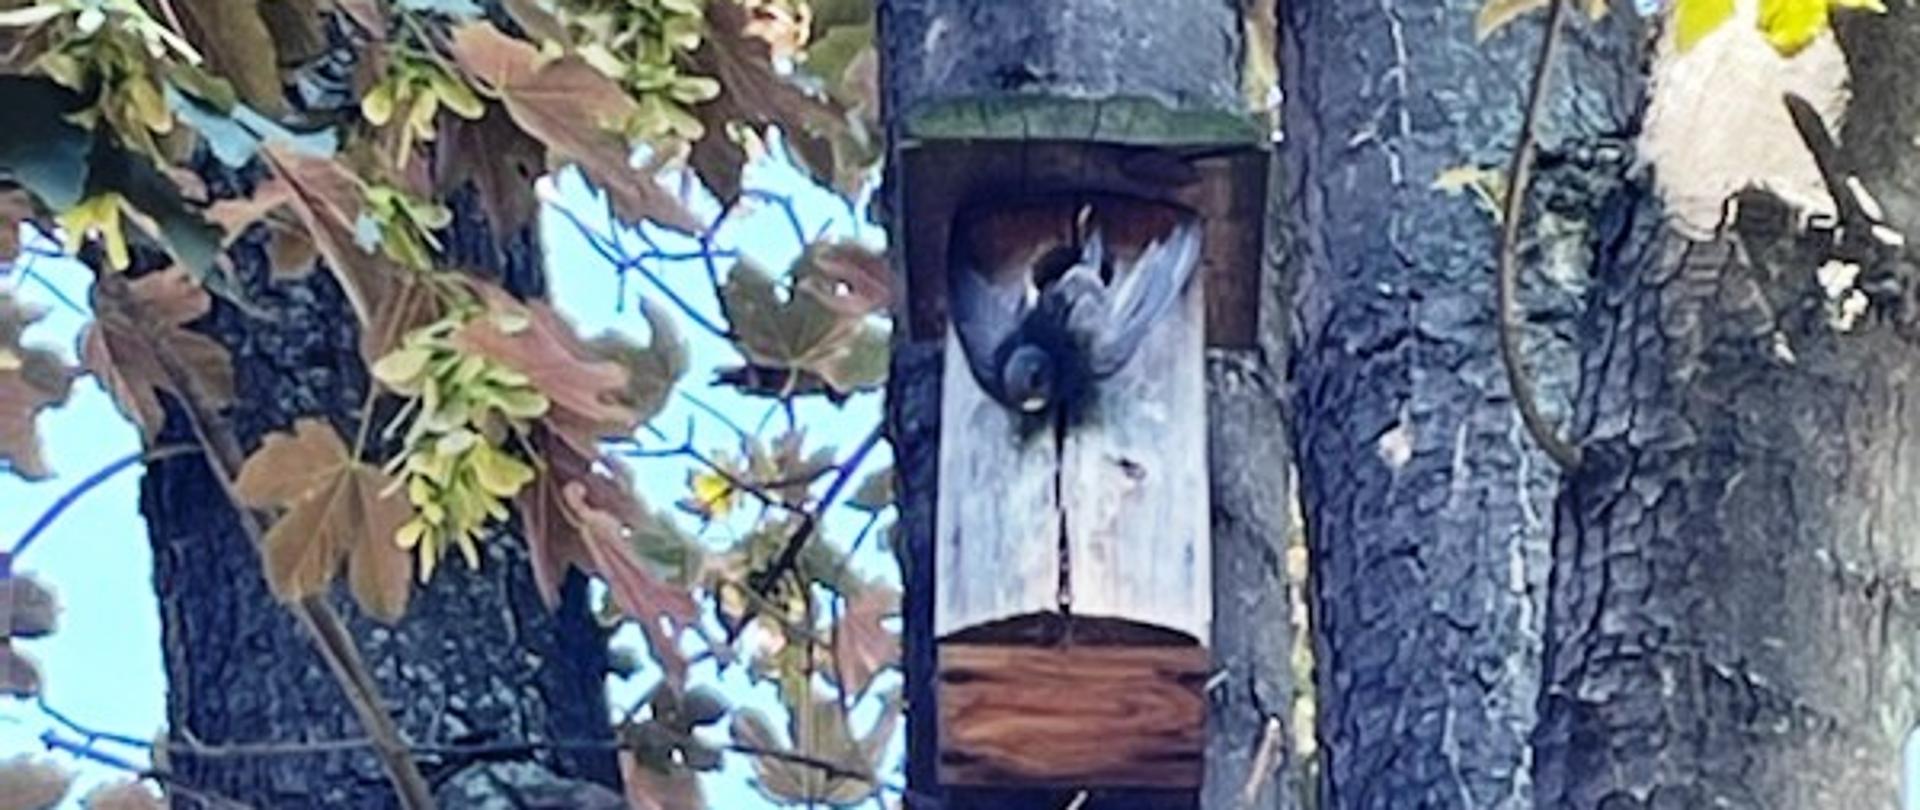 Ptak uwięziony przed budką wiszącą na drzewie.